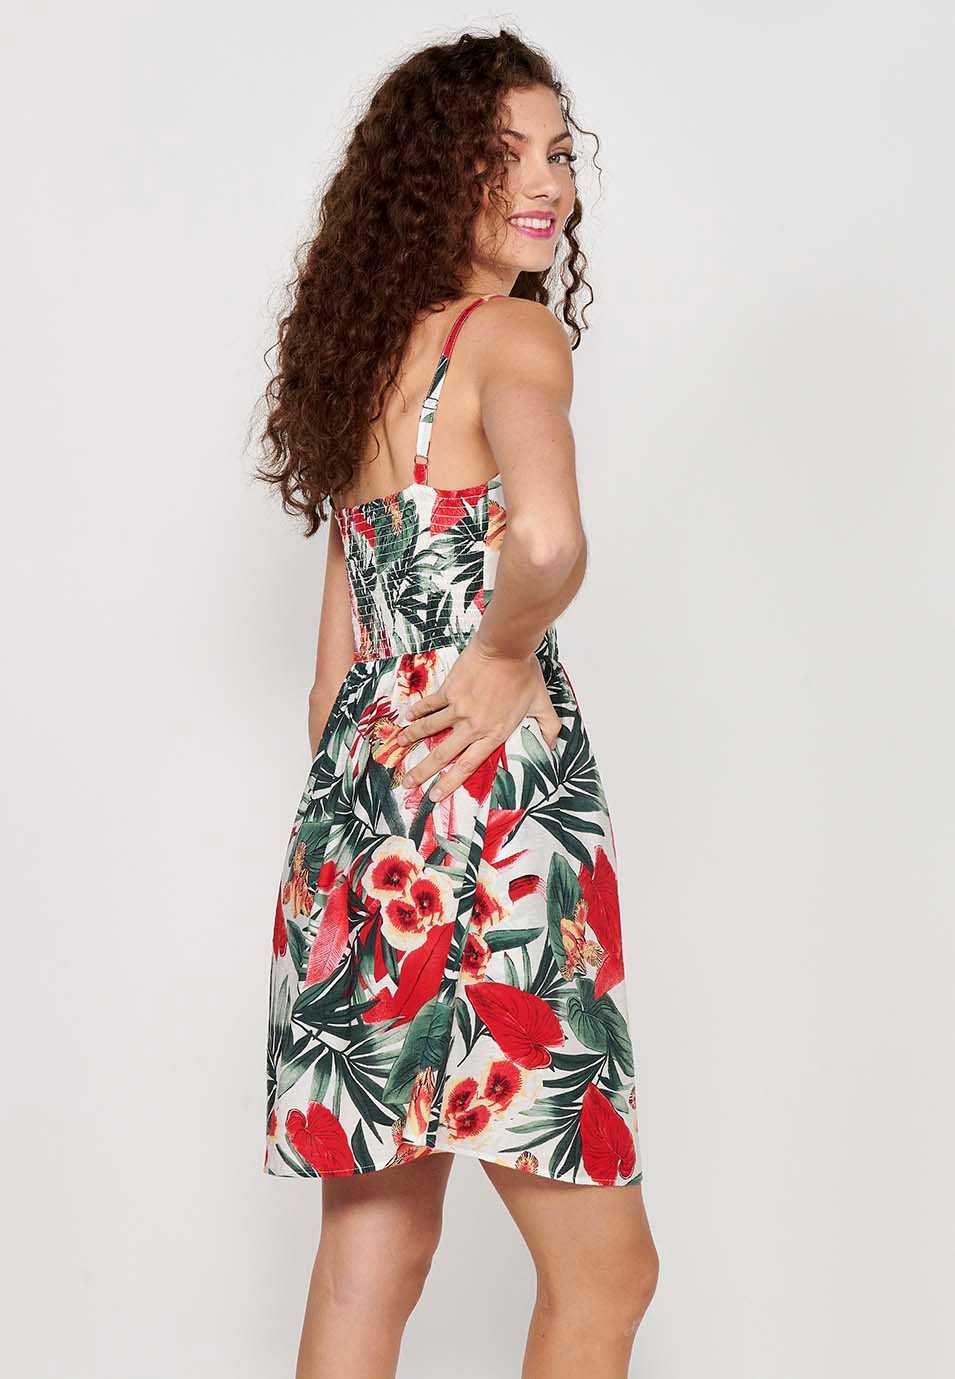 Robe pour femme à imprimé floral tropical, col en V, bretelles boutonnées sur le devant, dos caoutchouté, multicolore 4